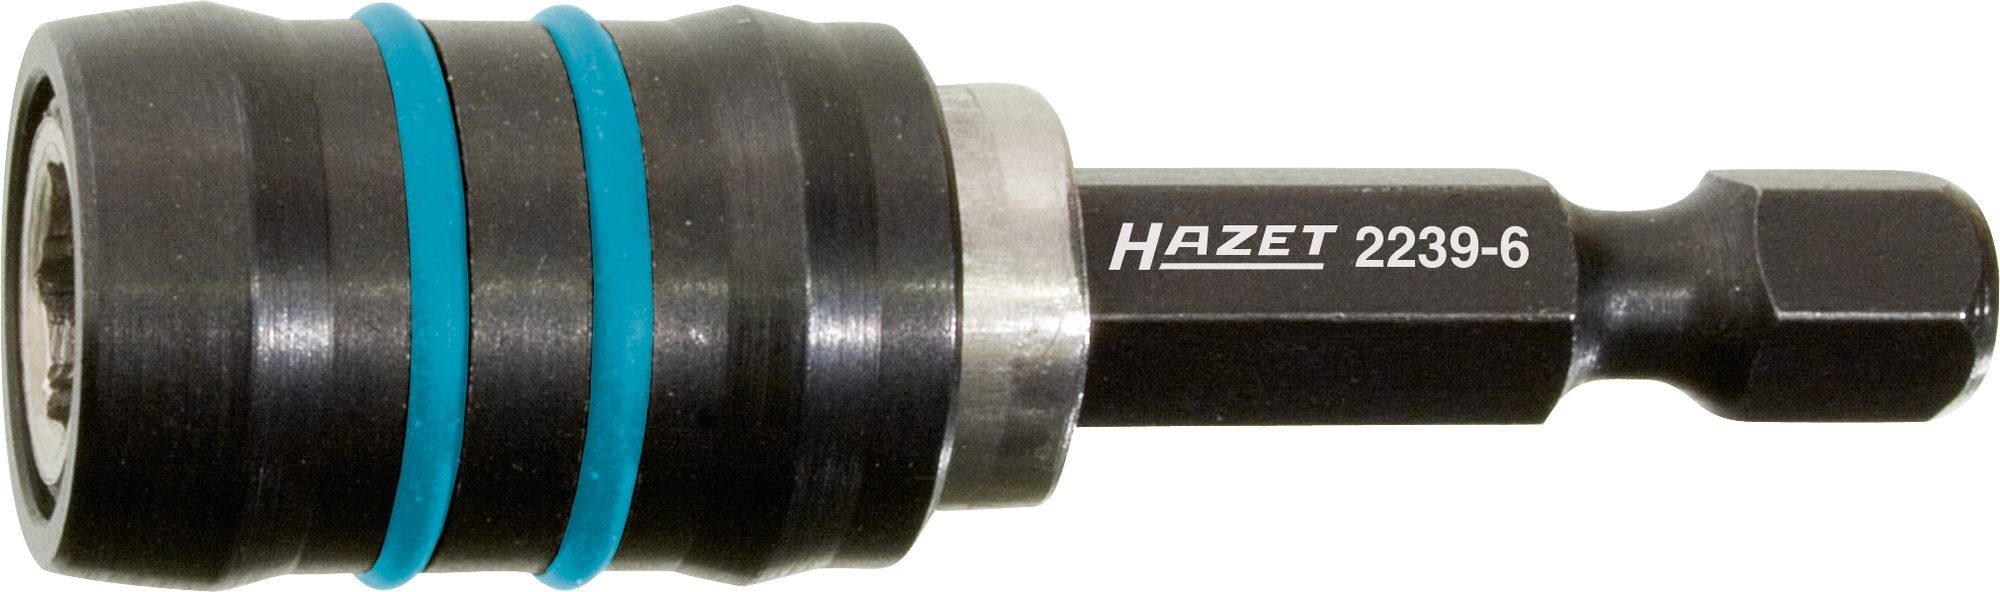 Bit-Set 2239-6 Verbindungsteil, HAZET Hazet